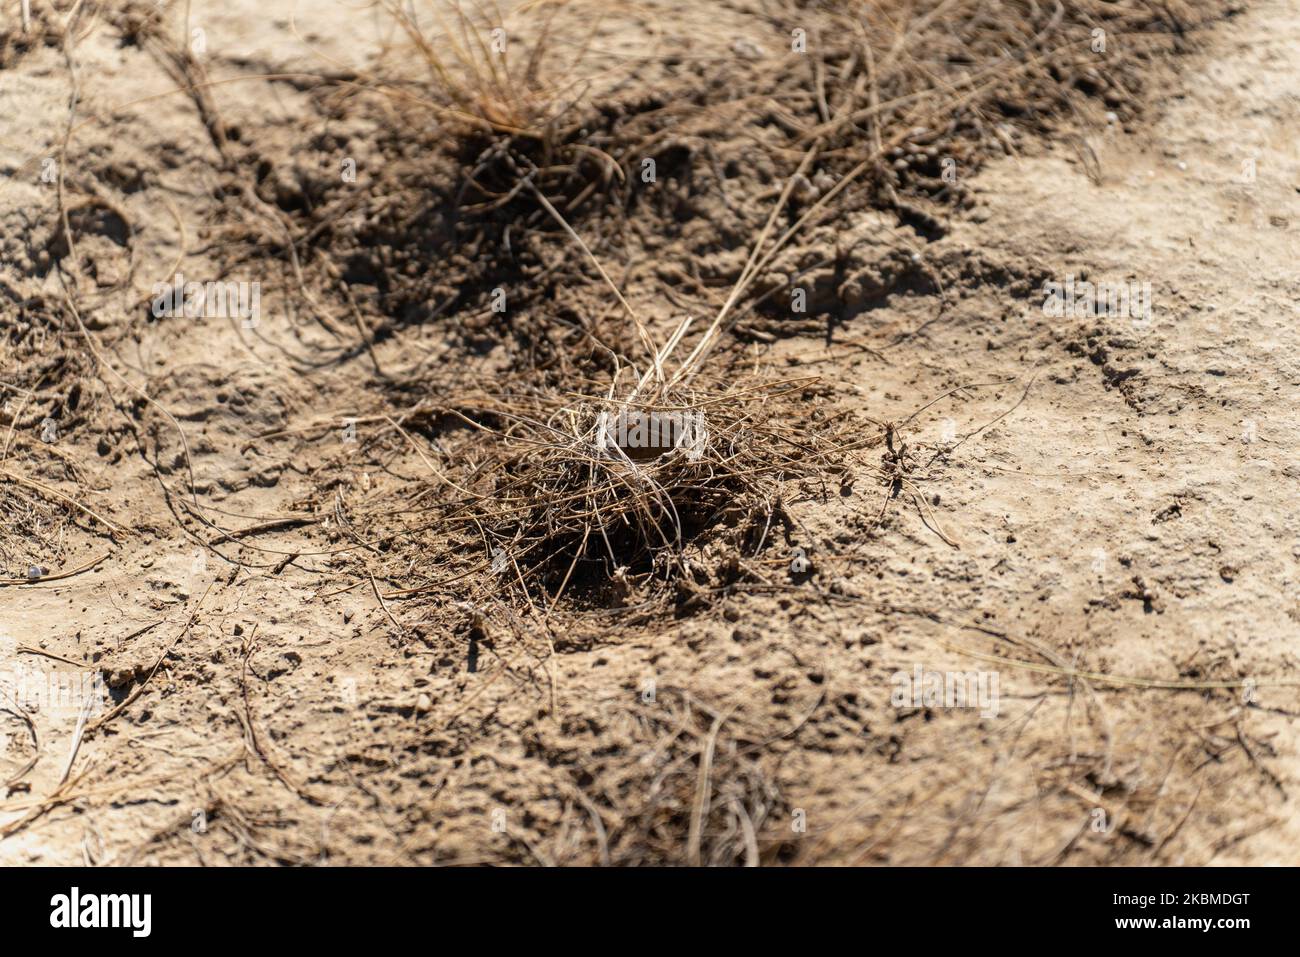 Vue de dessus du trou d'araignée de Trantula au milieu du désert Banque D'Images